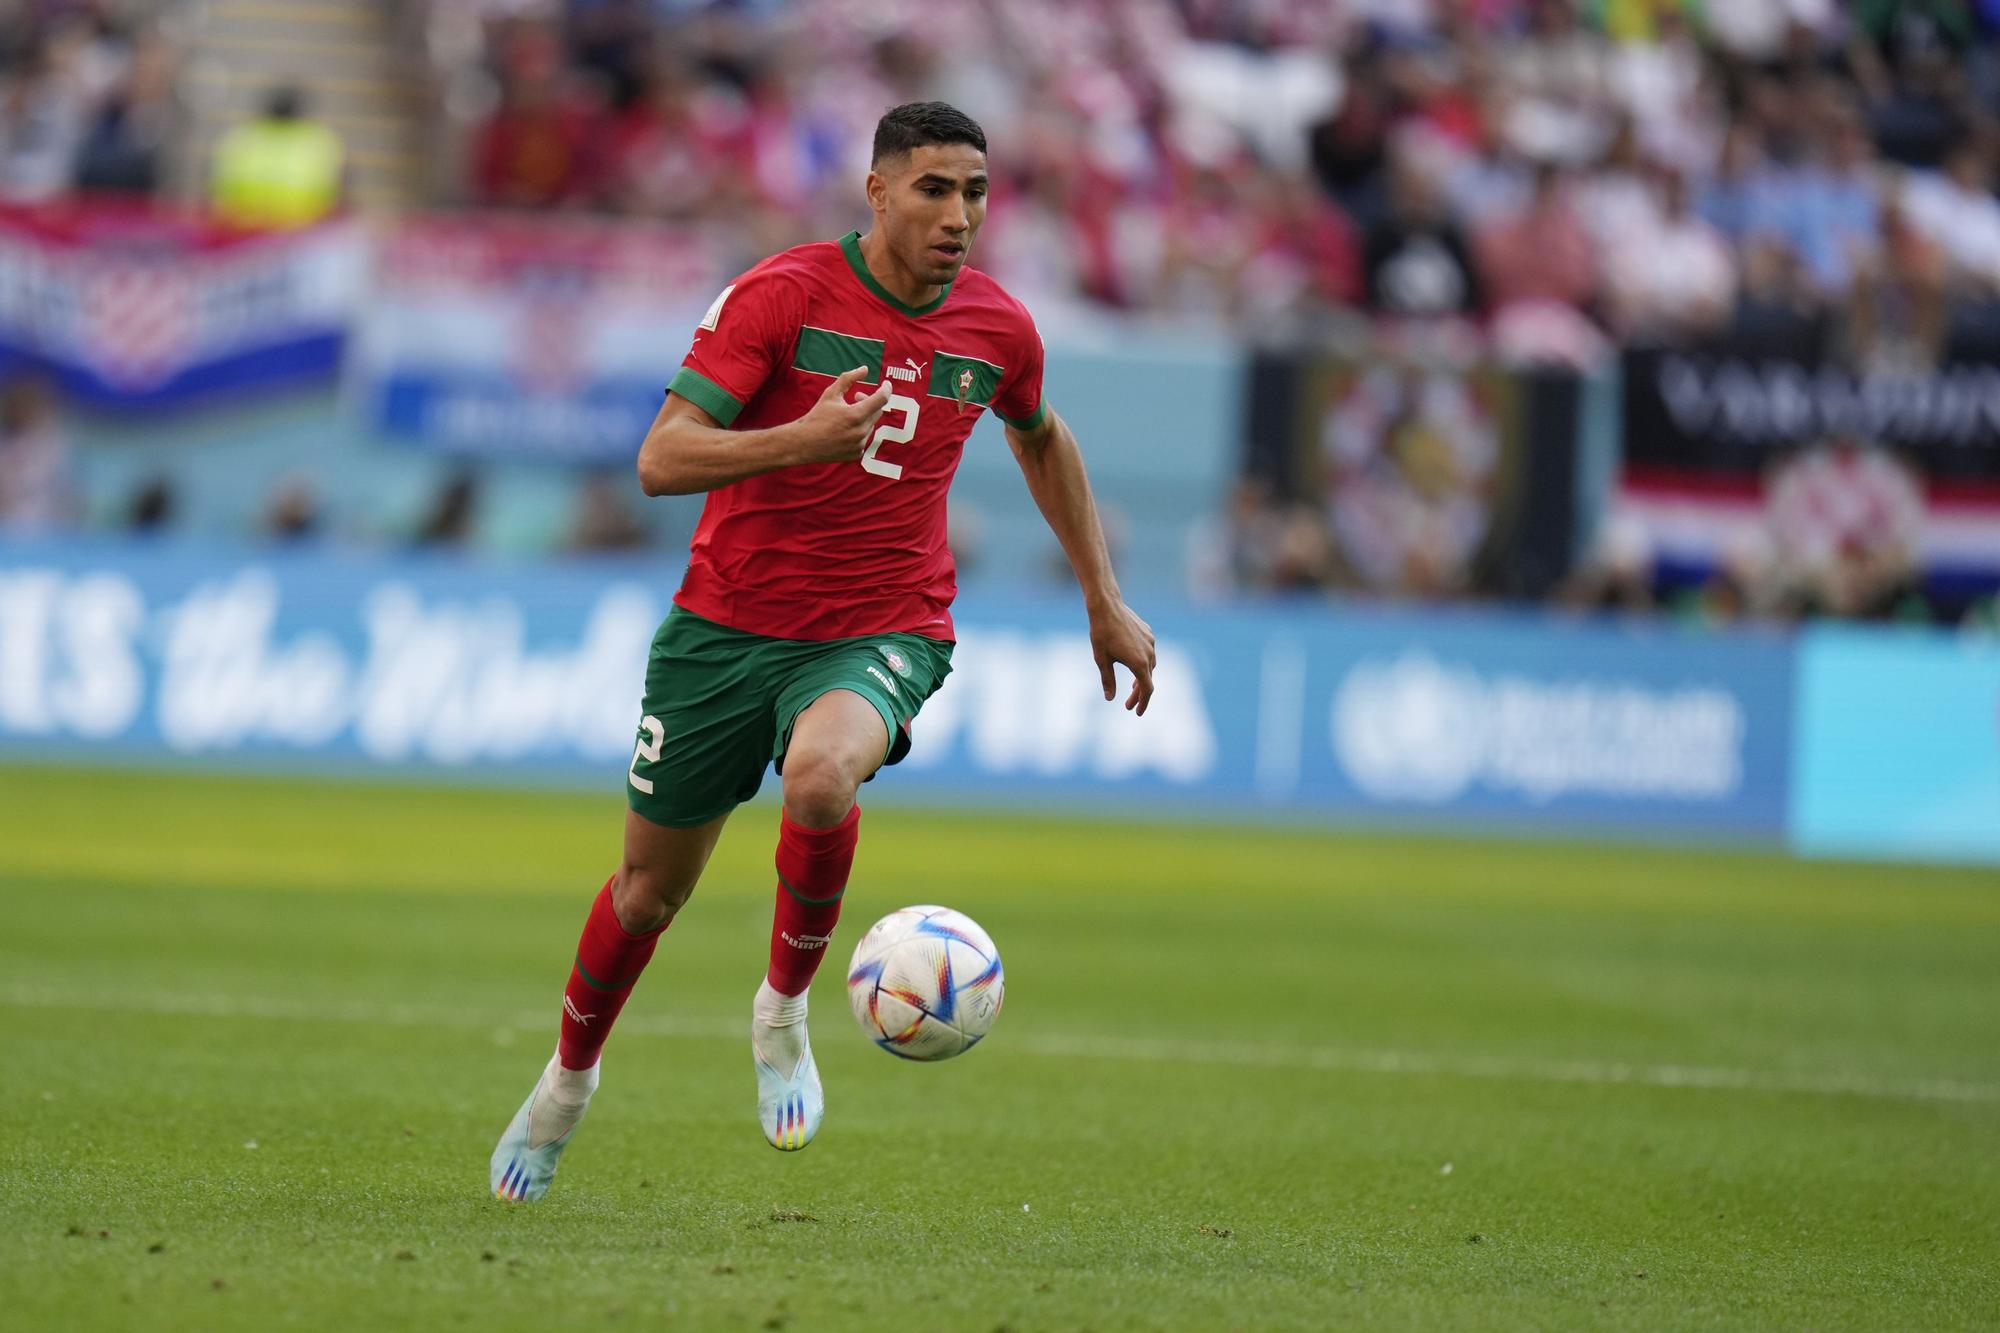 Achraf Hakimi: El lateral marroquí es una de las grandes bazas de la sensación de este mundial. El jugador del PSG se ha erigido como el líder del equipo que amenaza a España en su camino hacía la final.